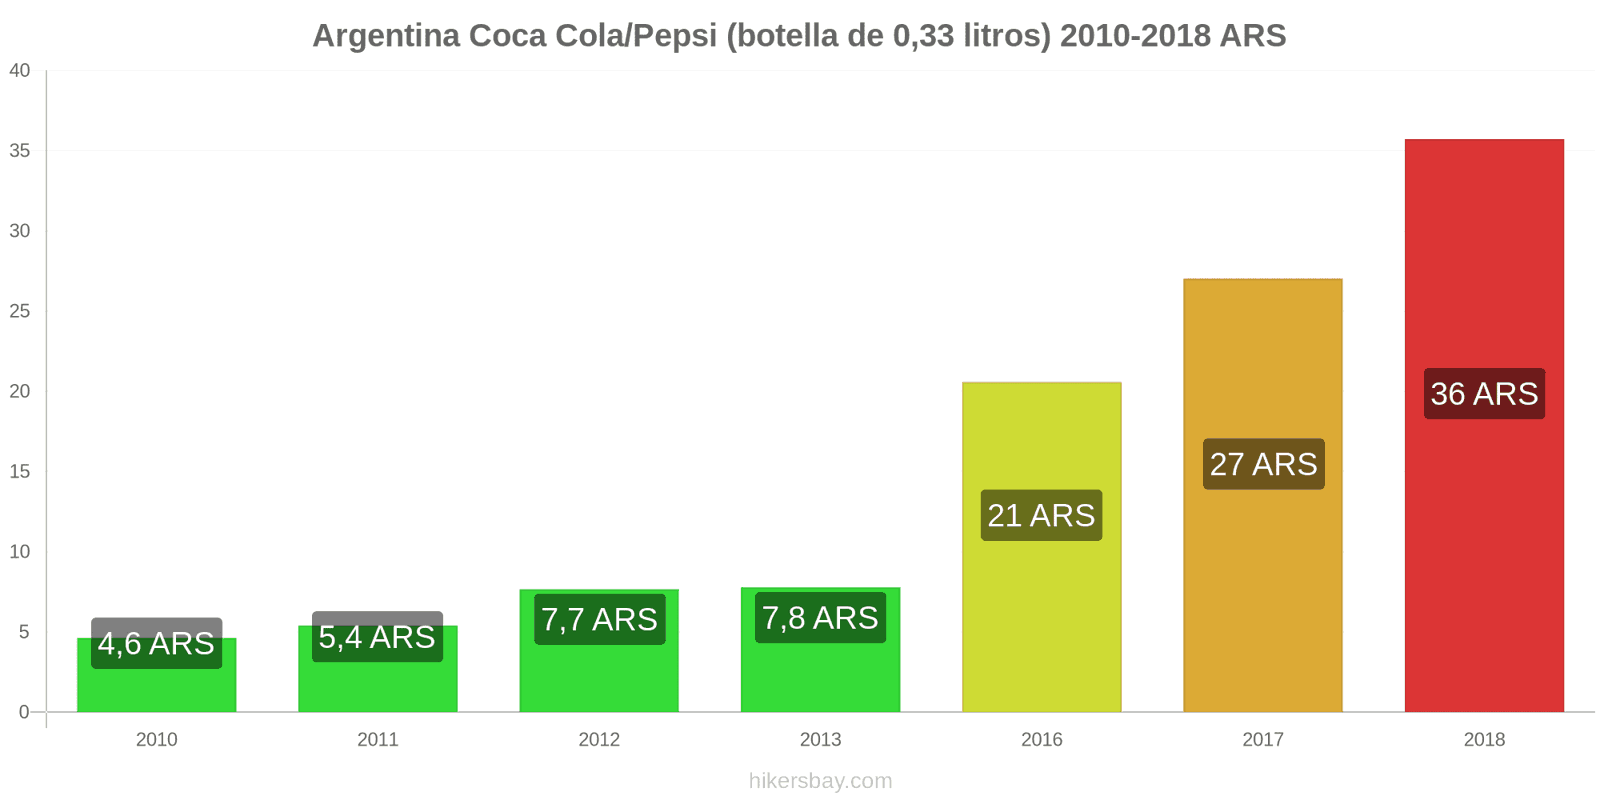 Argentina cambios de precios Coca-Cola/Pepsi (botella de 0.33 litros) hikersbay.com